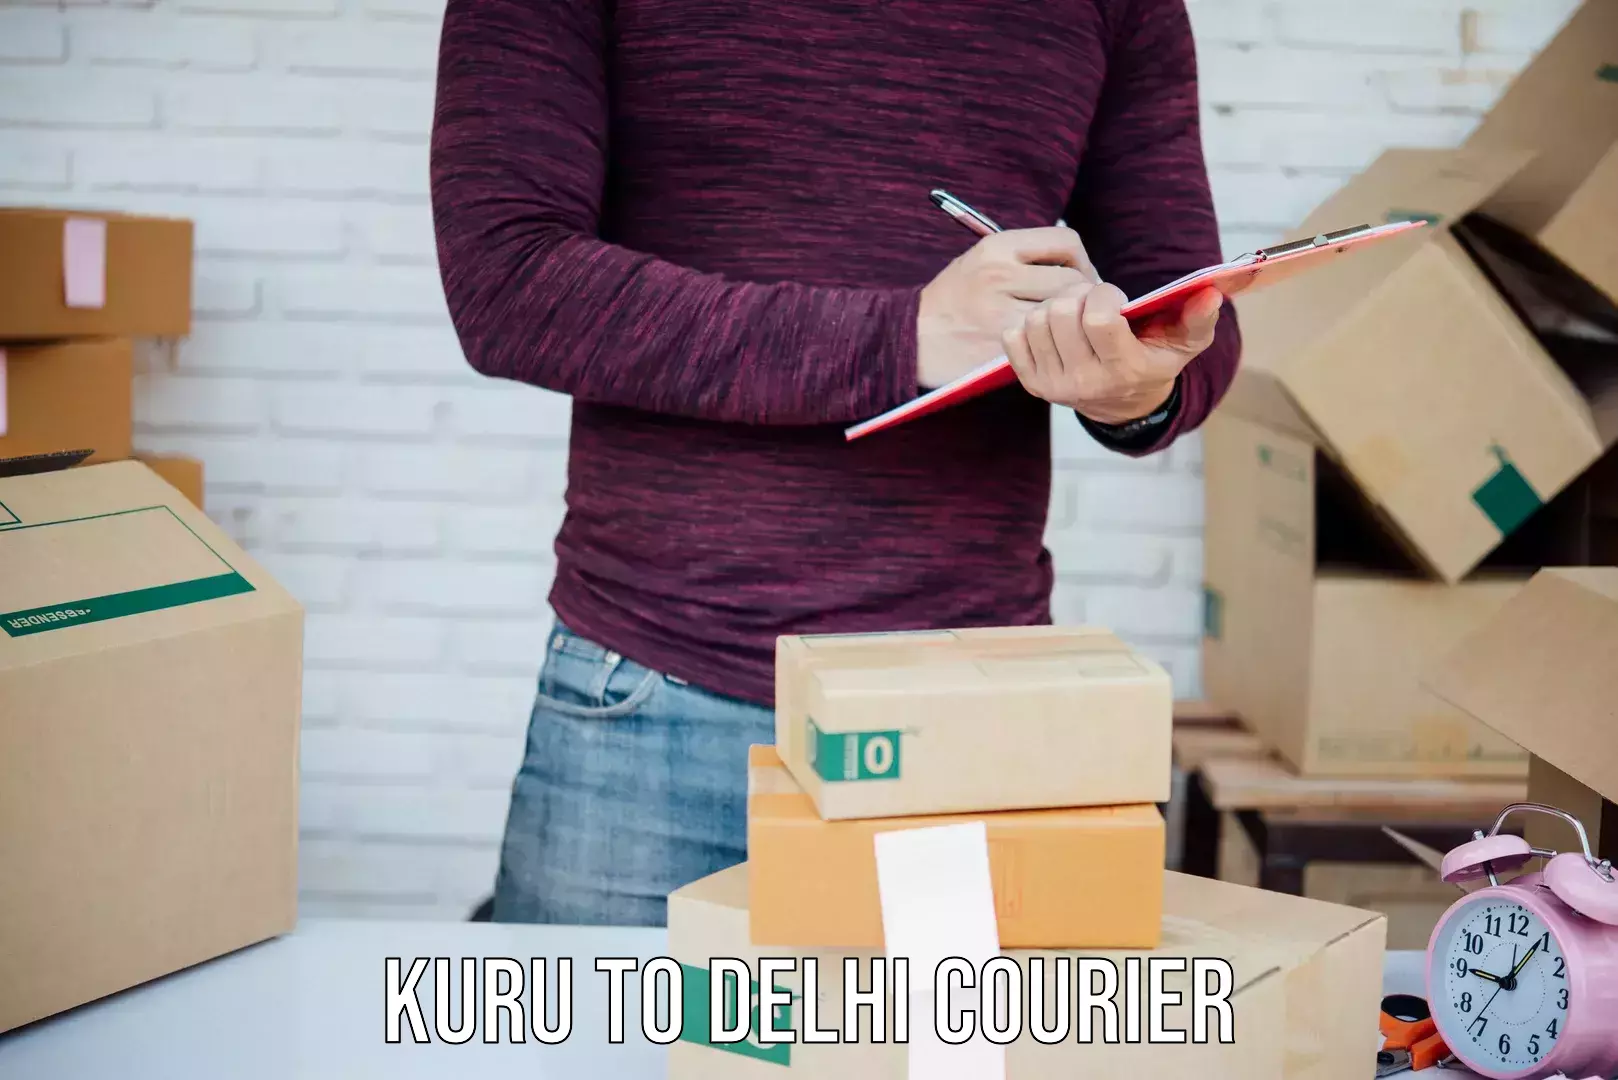 Courier service comparison Kuru to Subhash Nagar